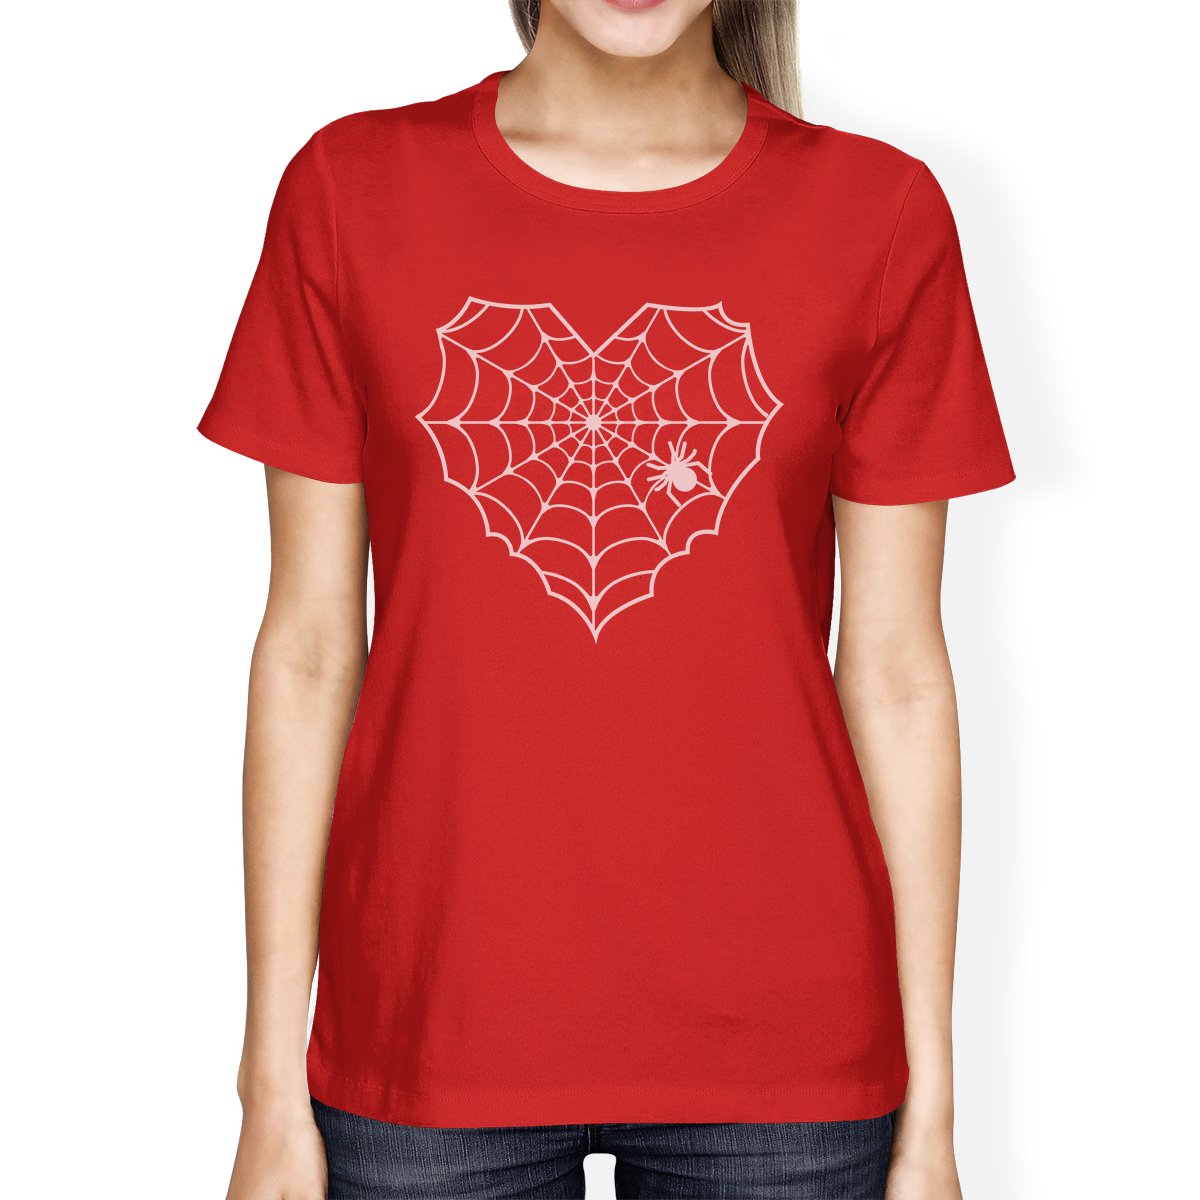 Heart Spider Web Women's T-Shirt- Red